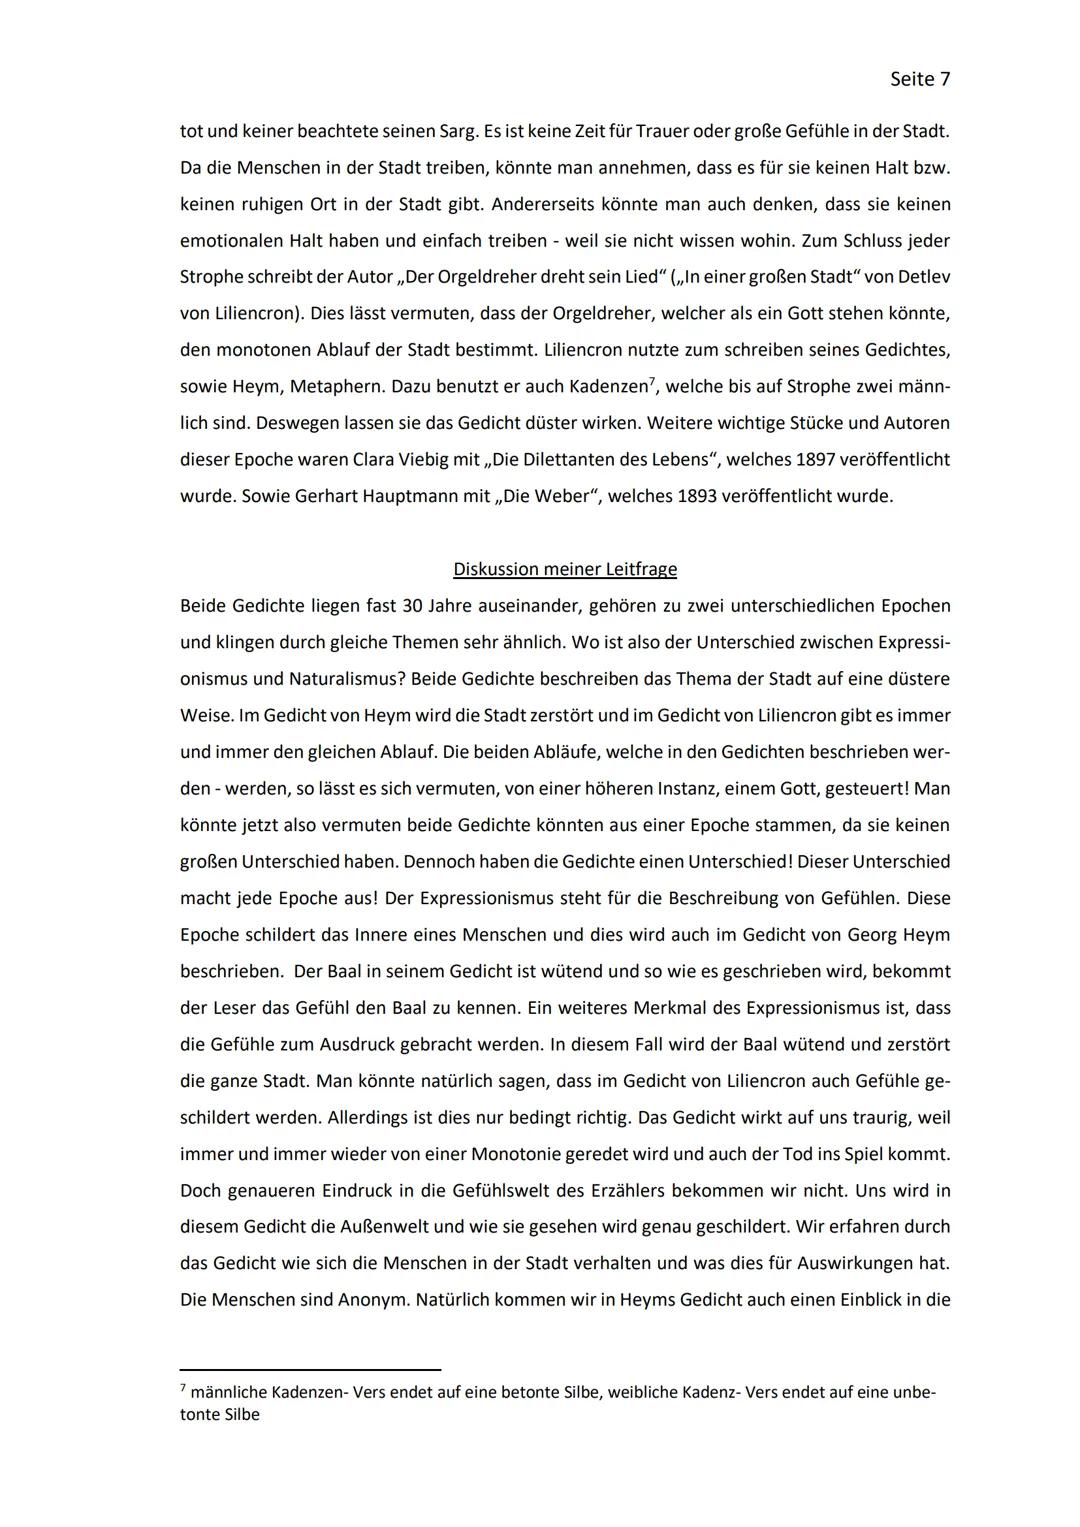 Facharbeit
Deutsche Literatur - Epochen
Der Expressionismus 1
2.1
2 MERKMALE DES EXPRESSIONISMUS...
3
3.1
Inhaltsverzeichnis
EINLEITUNG.....